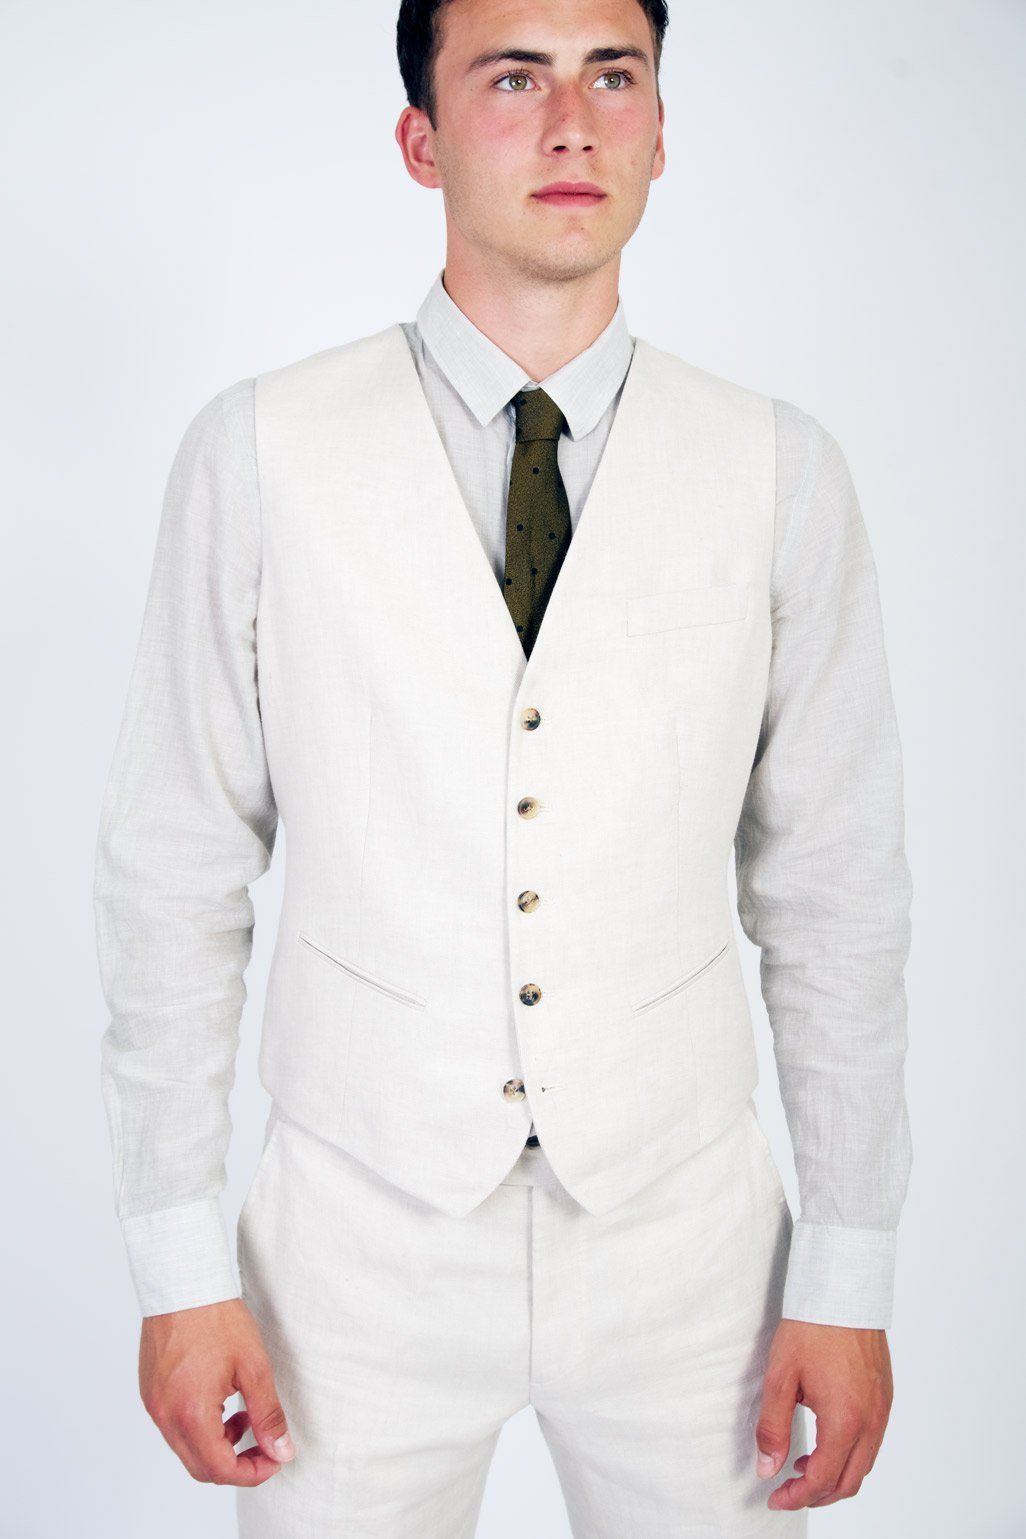 DAN | Formal Suit Waistcoat | Ecru I €240 -HANSEN Garments- HANSEN Garments